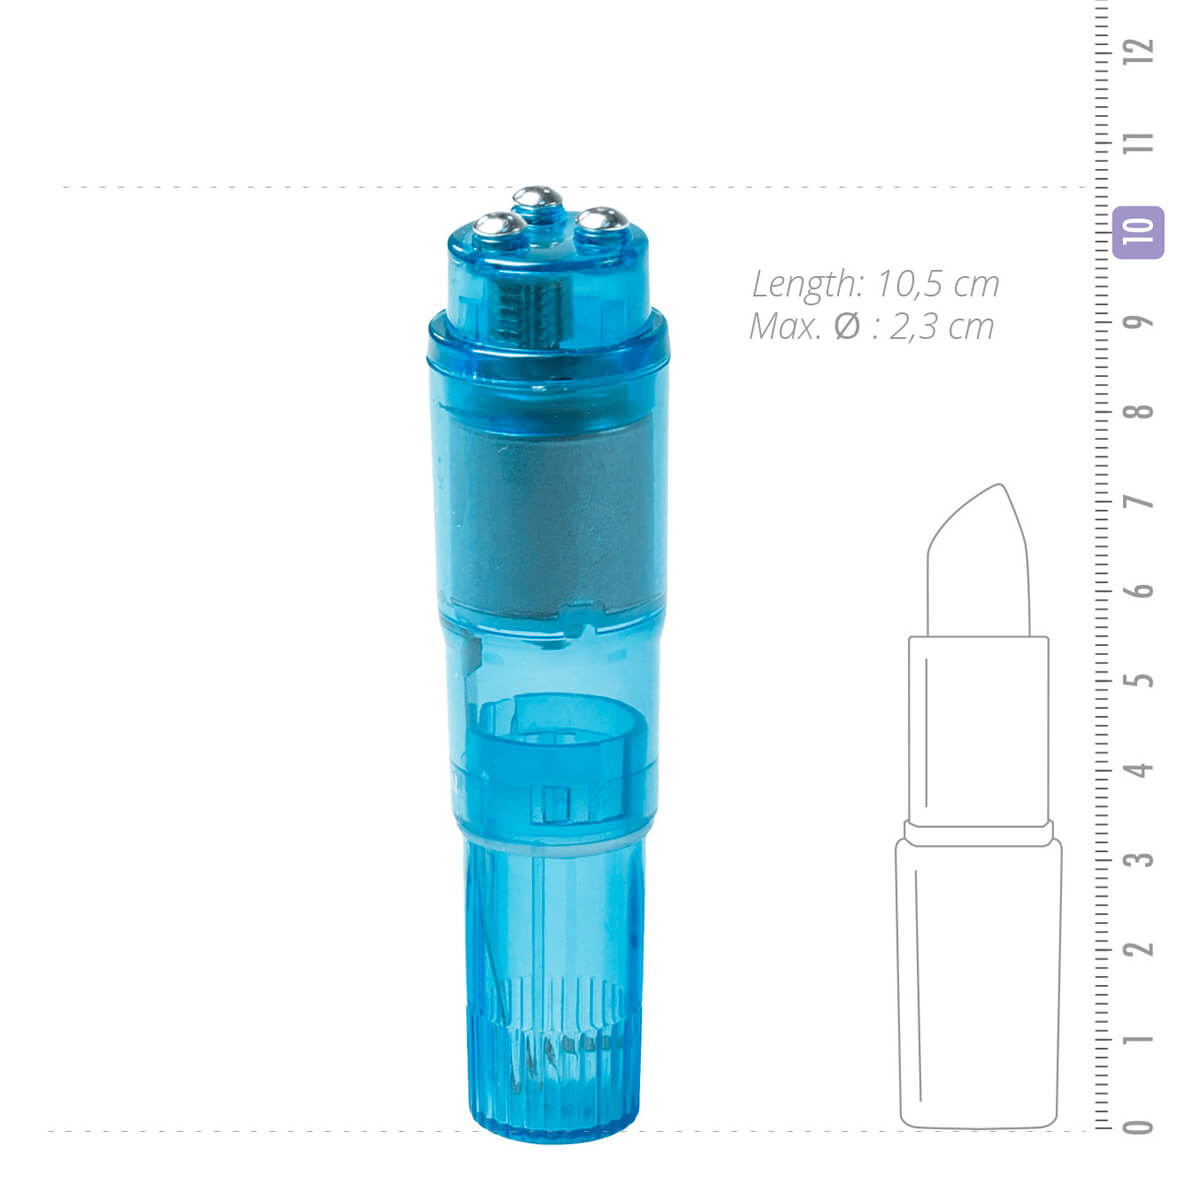 Easytoys Pocket Rocket - vibrátoros szett - kék (5 részes) Kicsi vibrátor kép